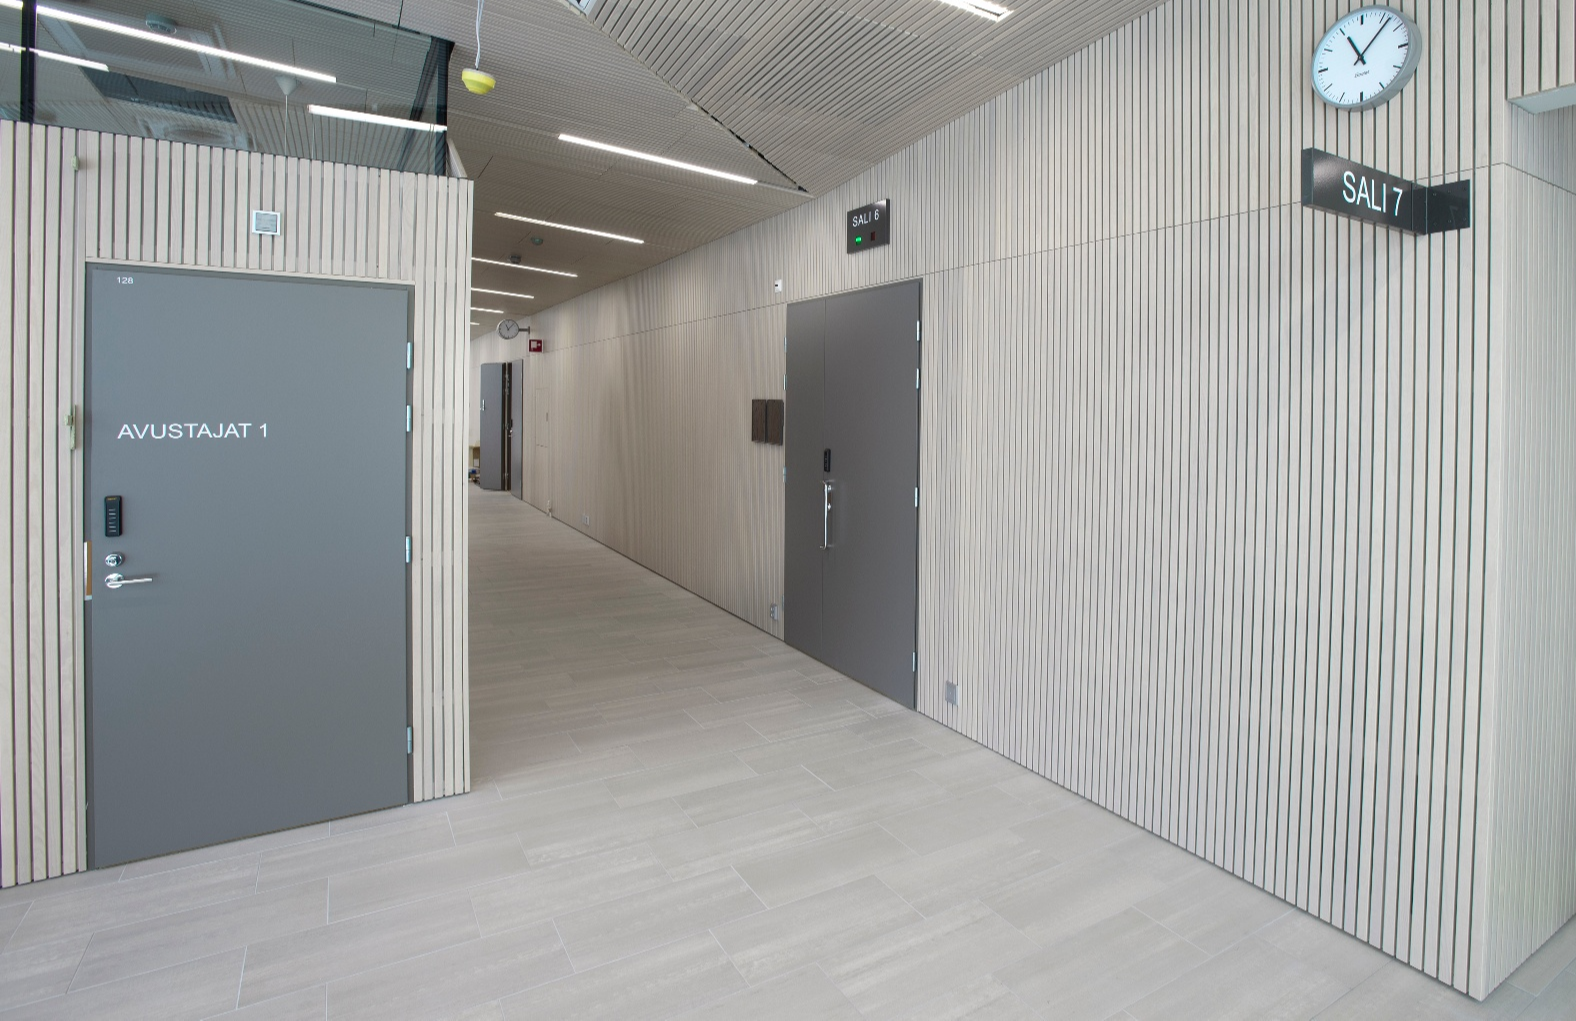 Ribbelement på väggarna och i undertaken i Villmanstrand rättsalens korridorer